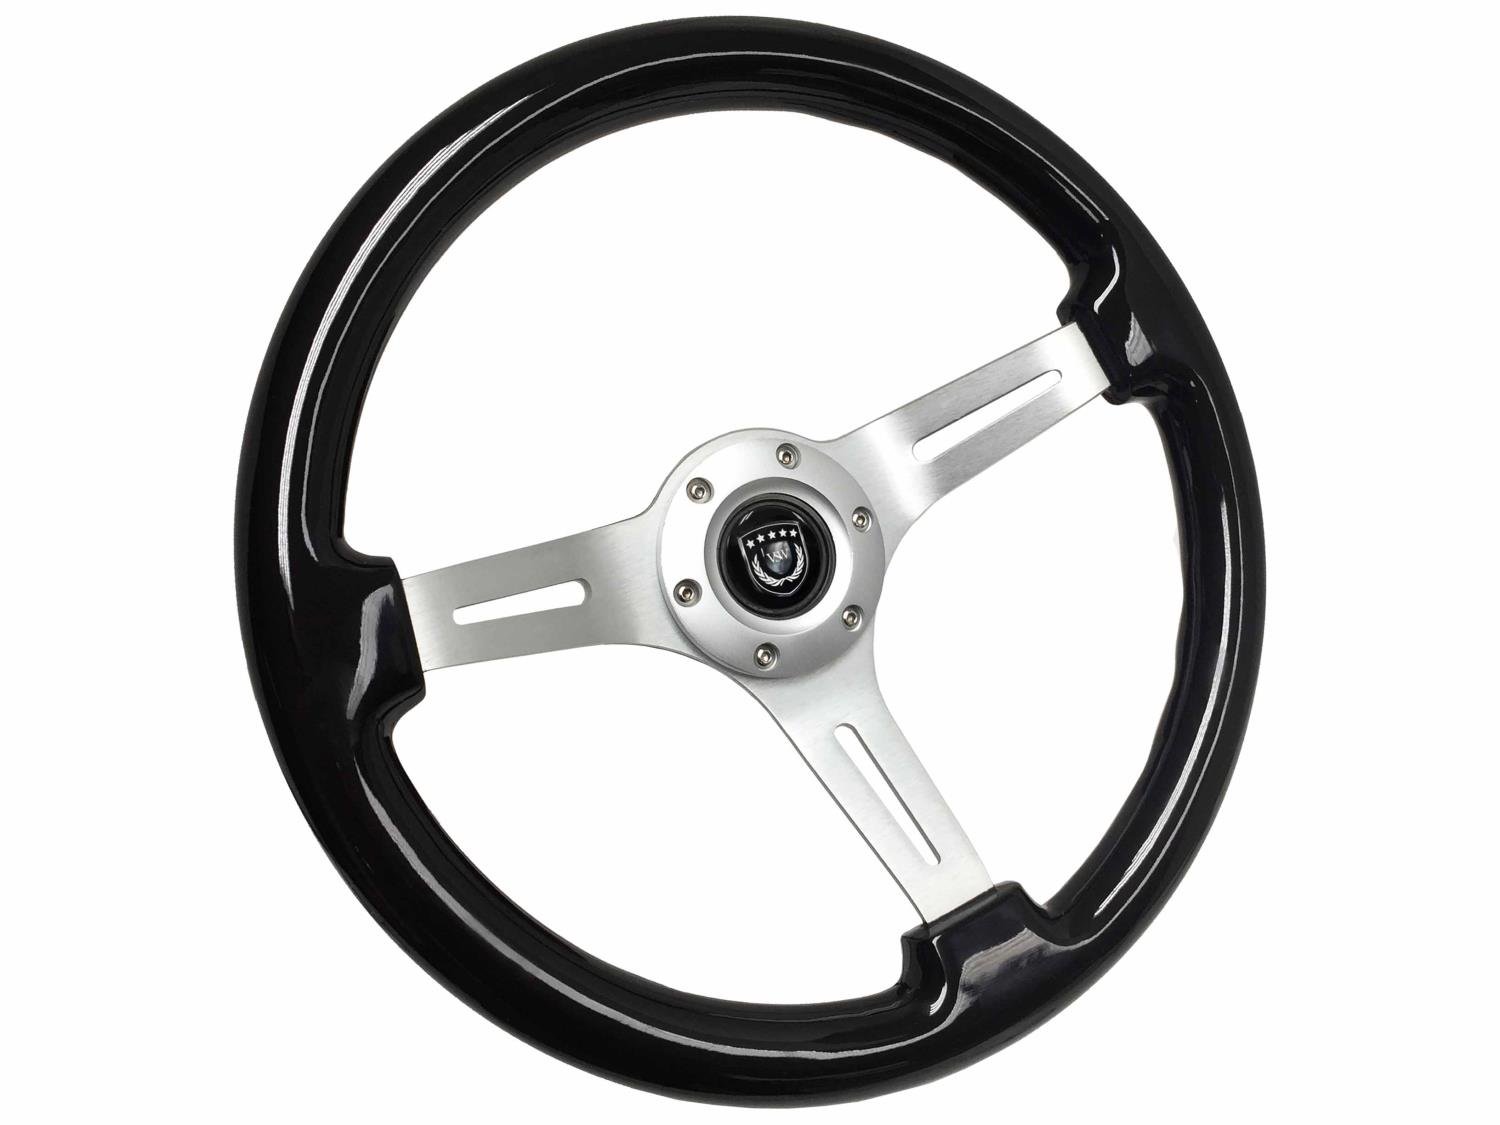 S6 Sport Steering Wheel, 14 in. Diameter, Black Ash Wood Grip